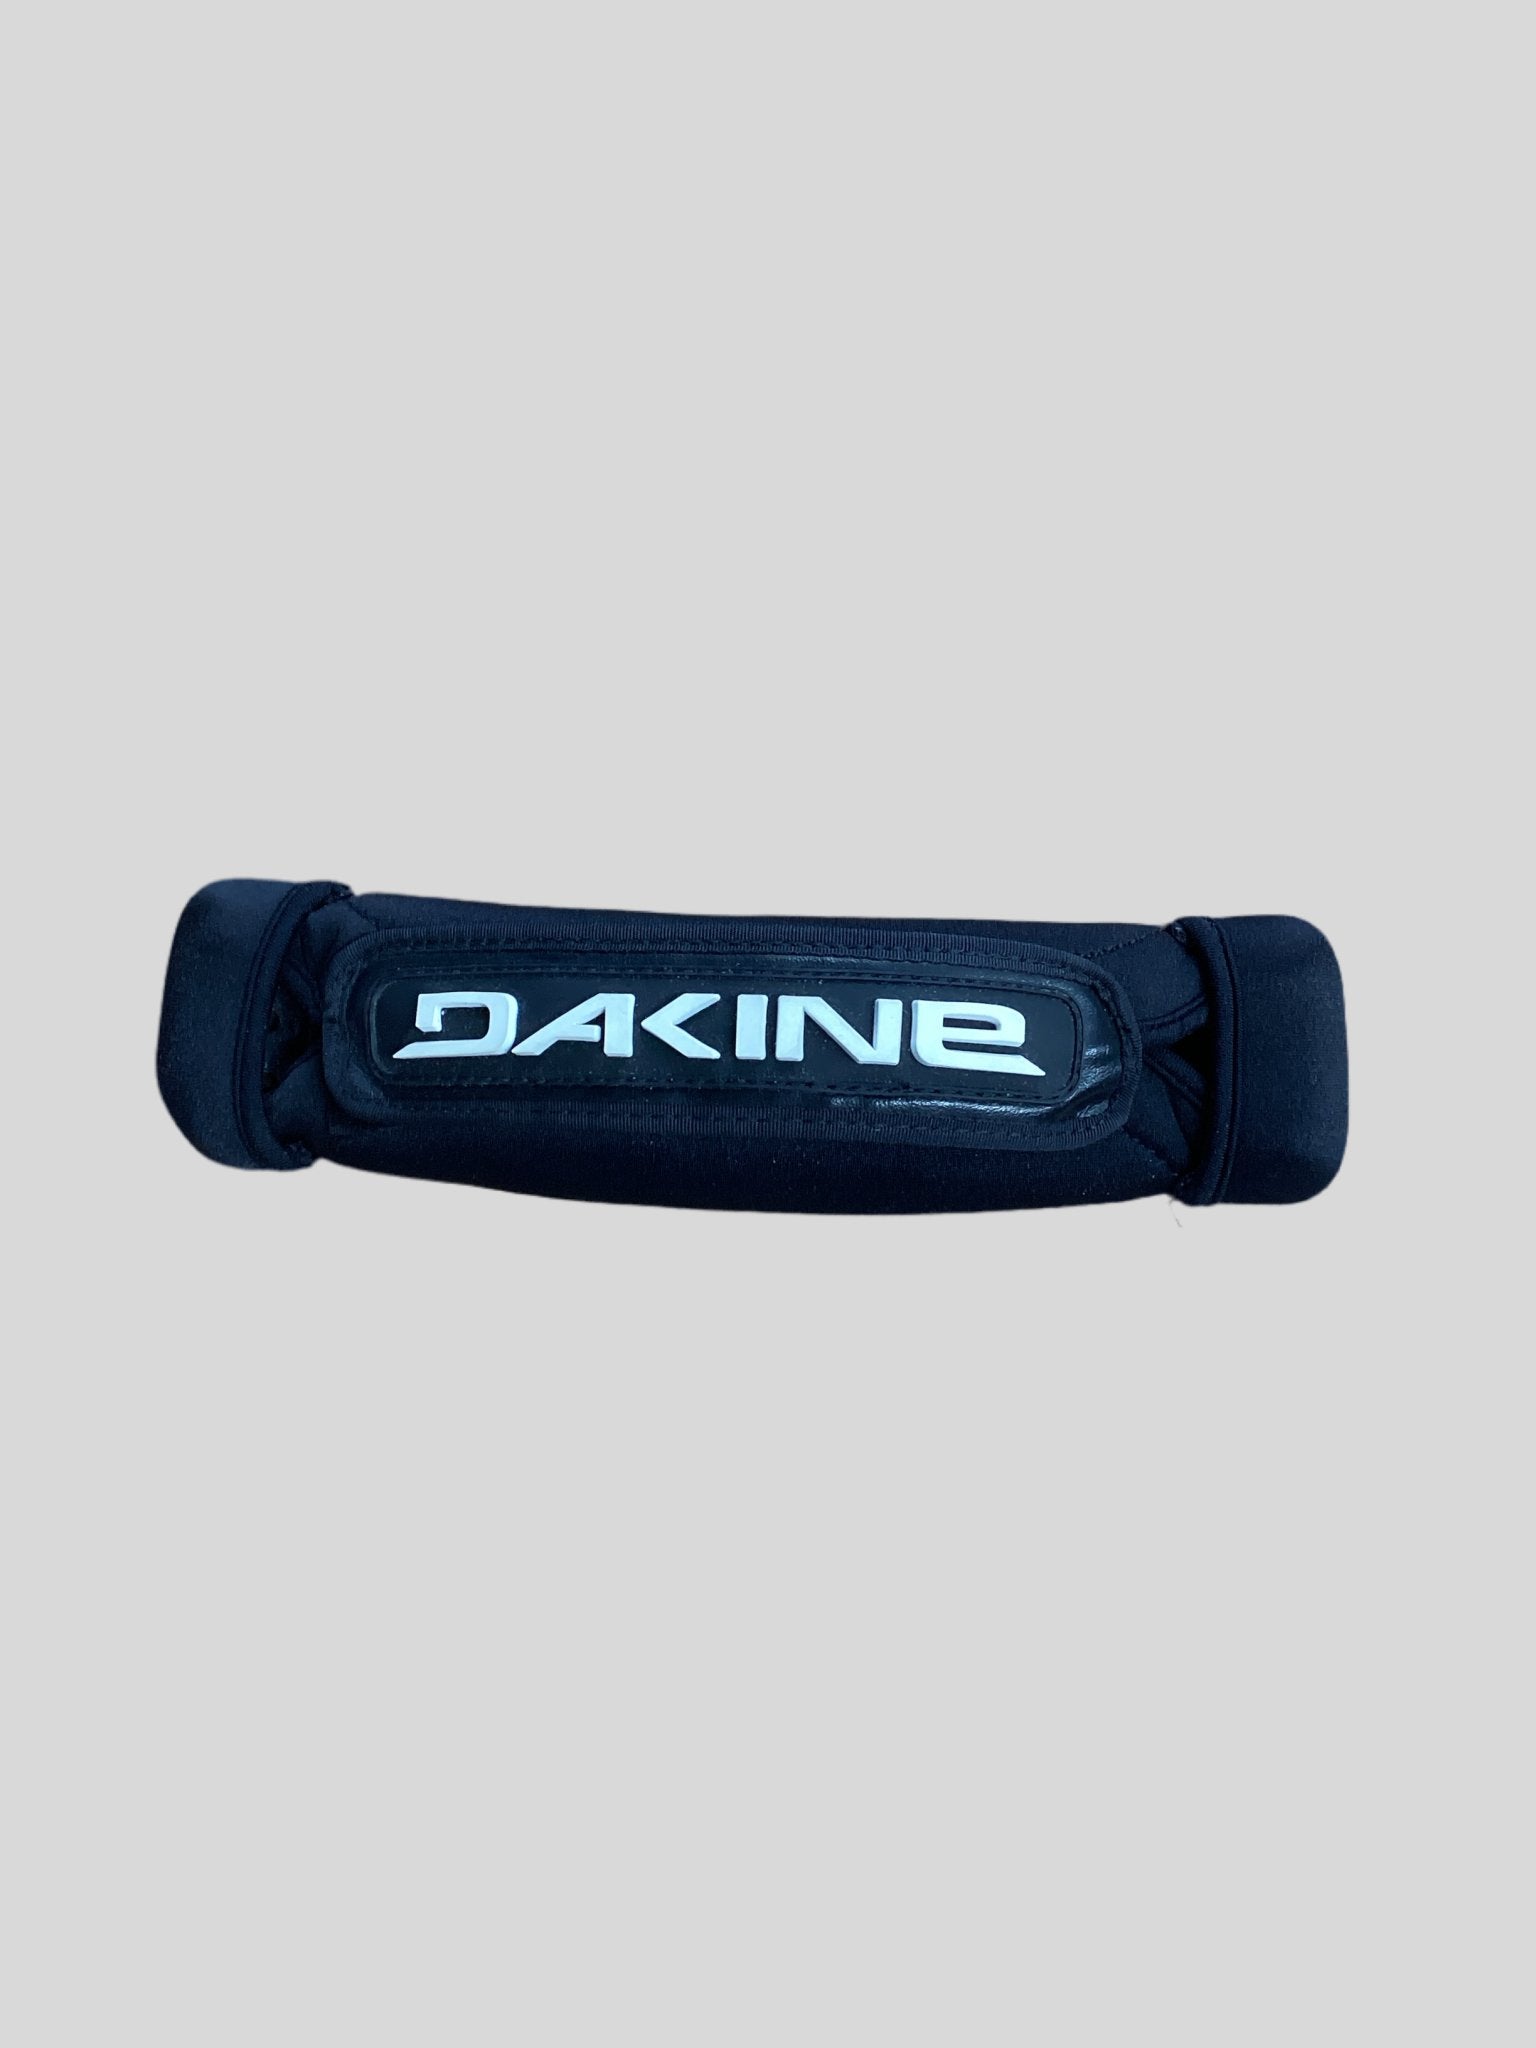 Dakine Windsurfing Footstrap - Worthing Watersports - 73241560782134 - Accessories - Dakine